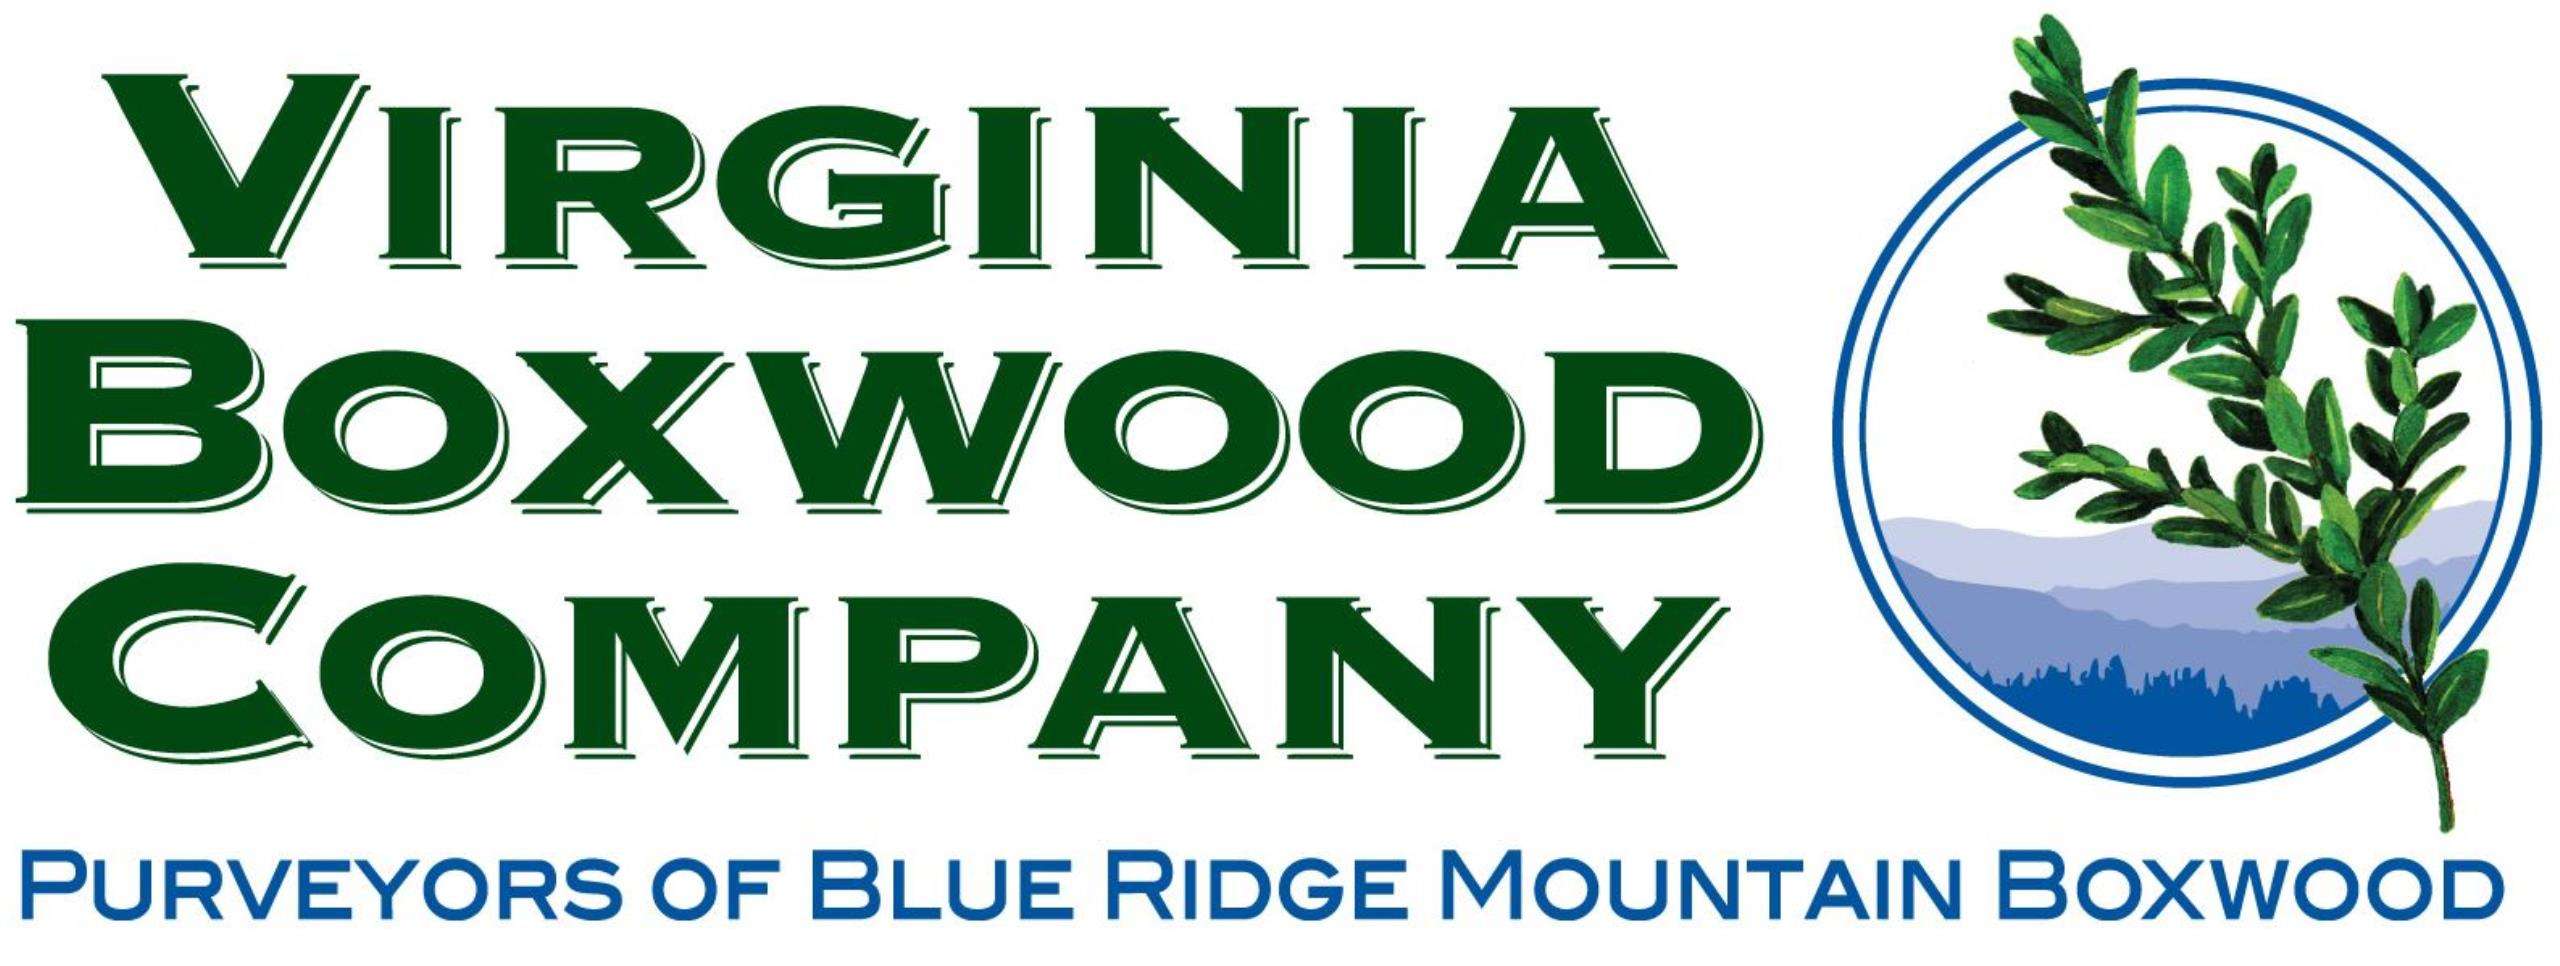 Virginia Boxwood Company Logo